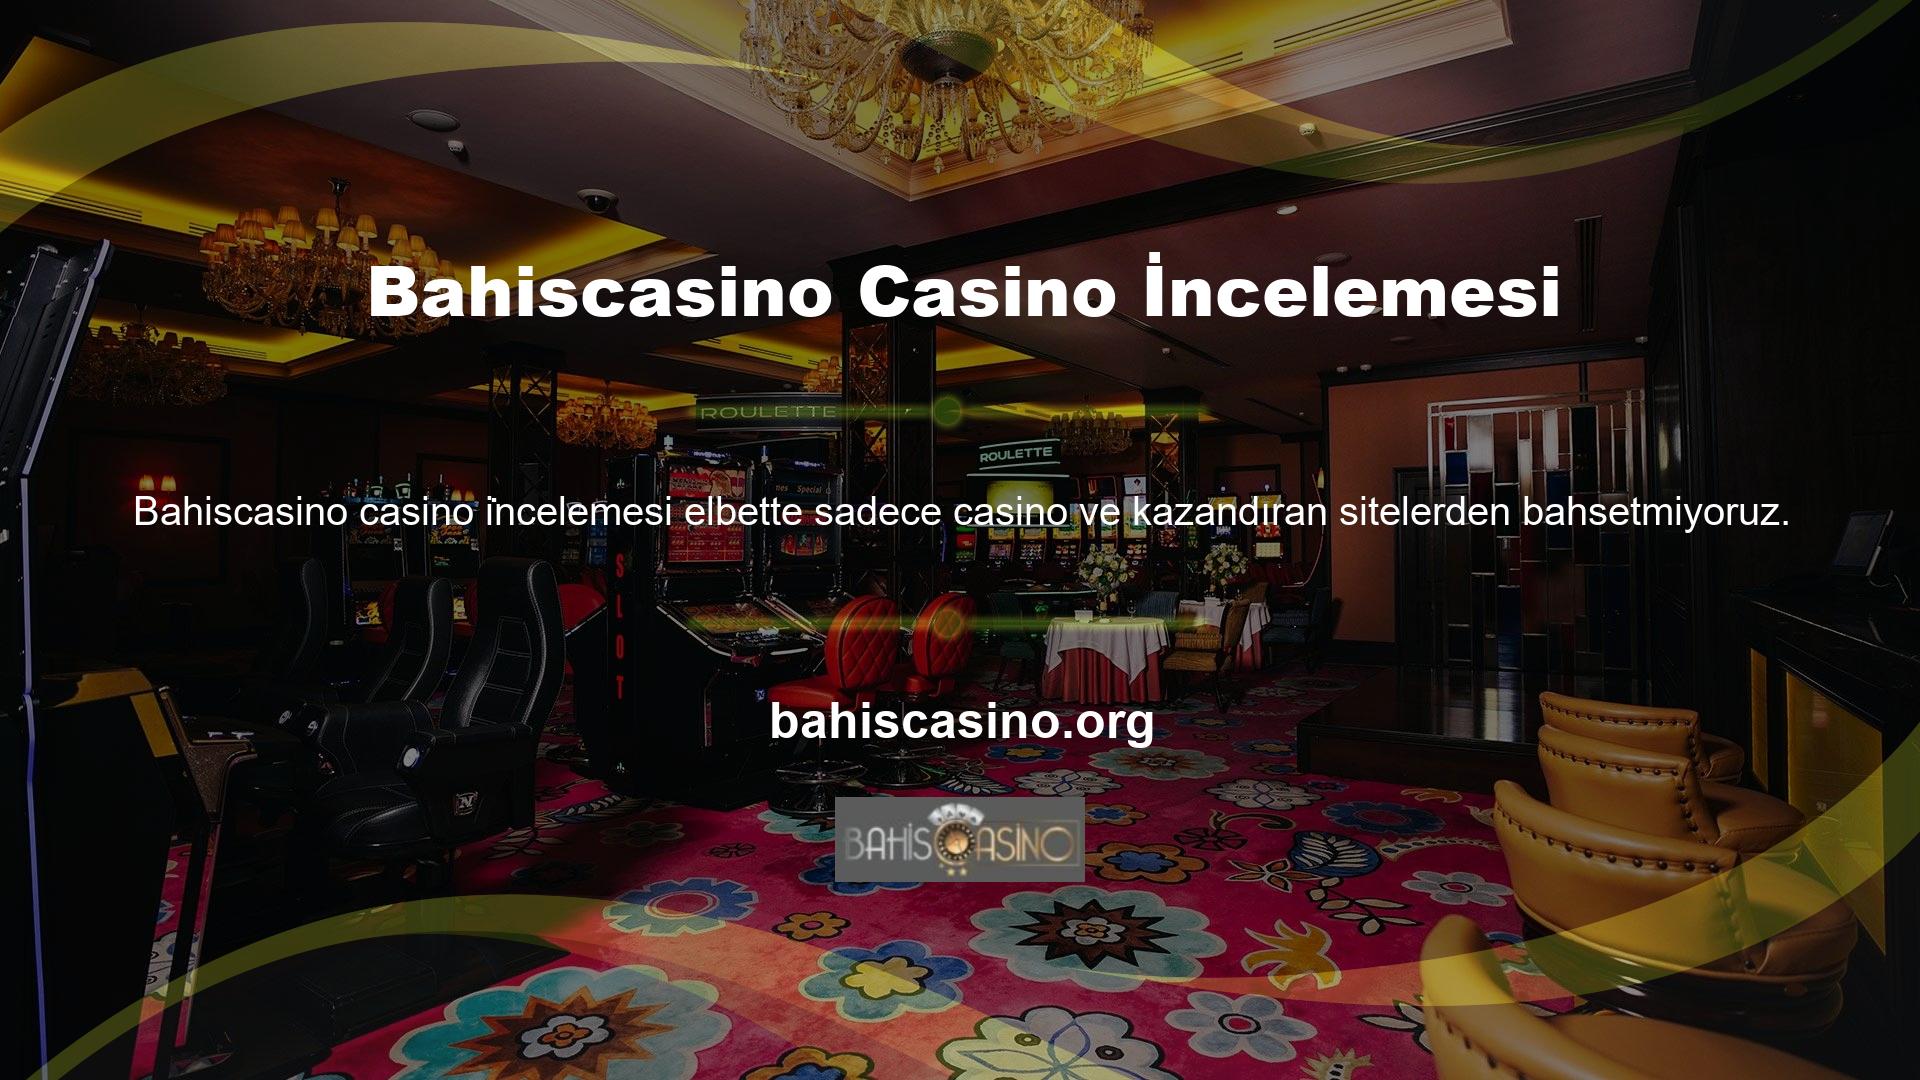 Bahiscasino Casino'ya göz atın ve slotlar, canlı casino oyunları, canlı oyunlar, poker, bingo, kaliteli oyunlar ve tavla oyunları göreceksiniz